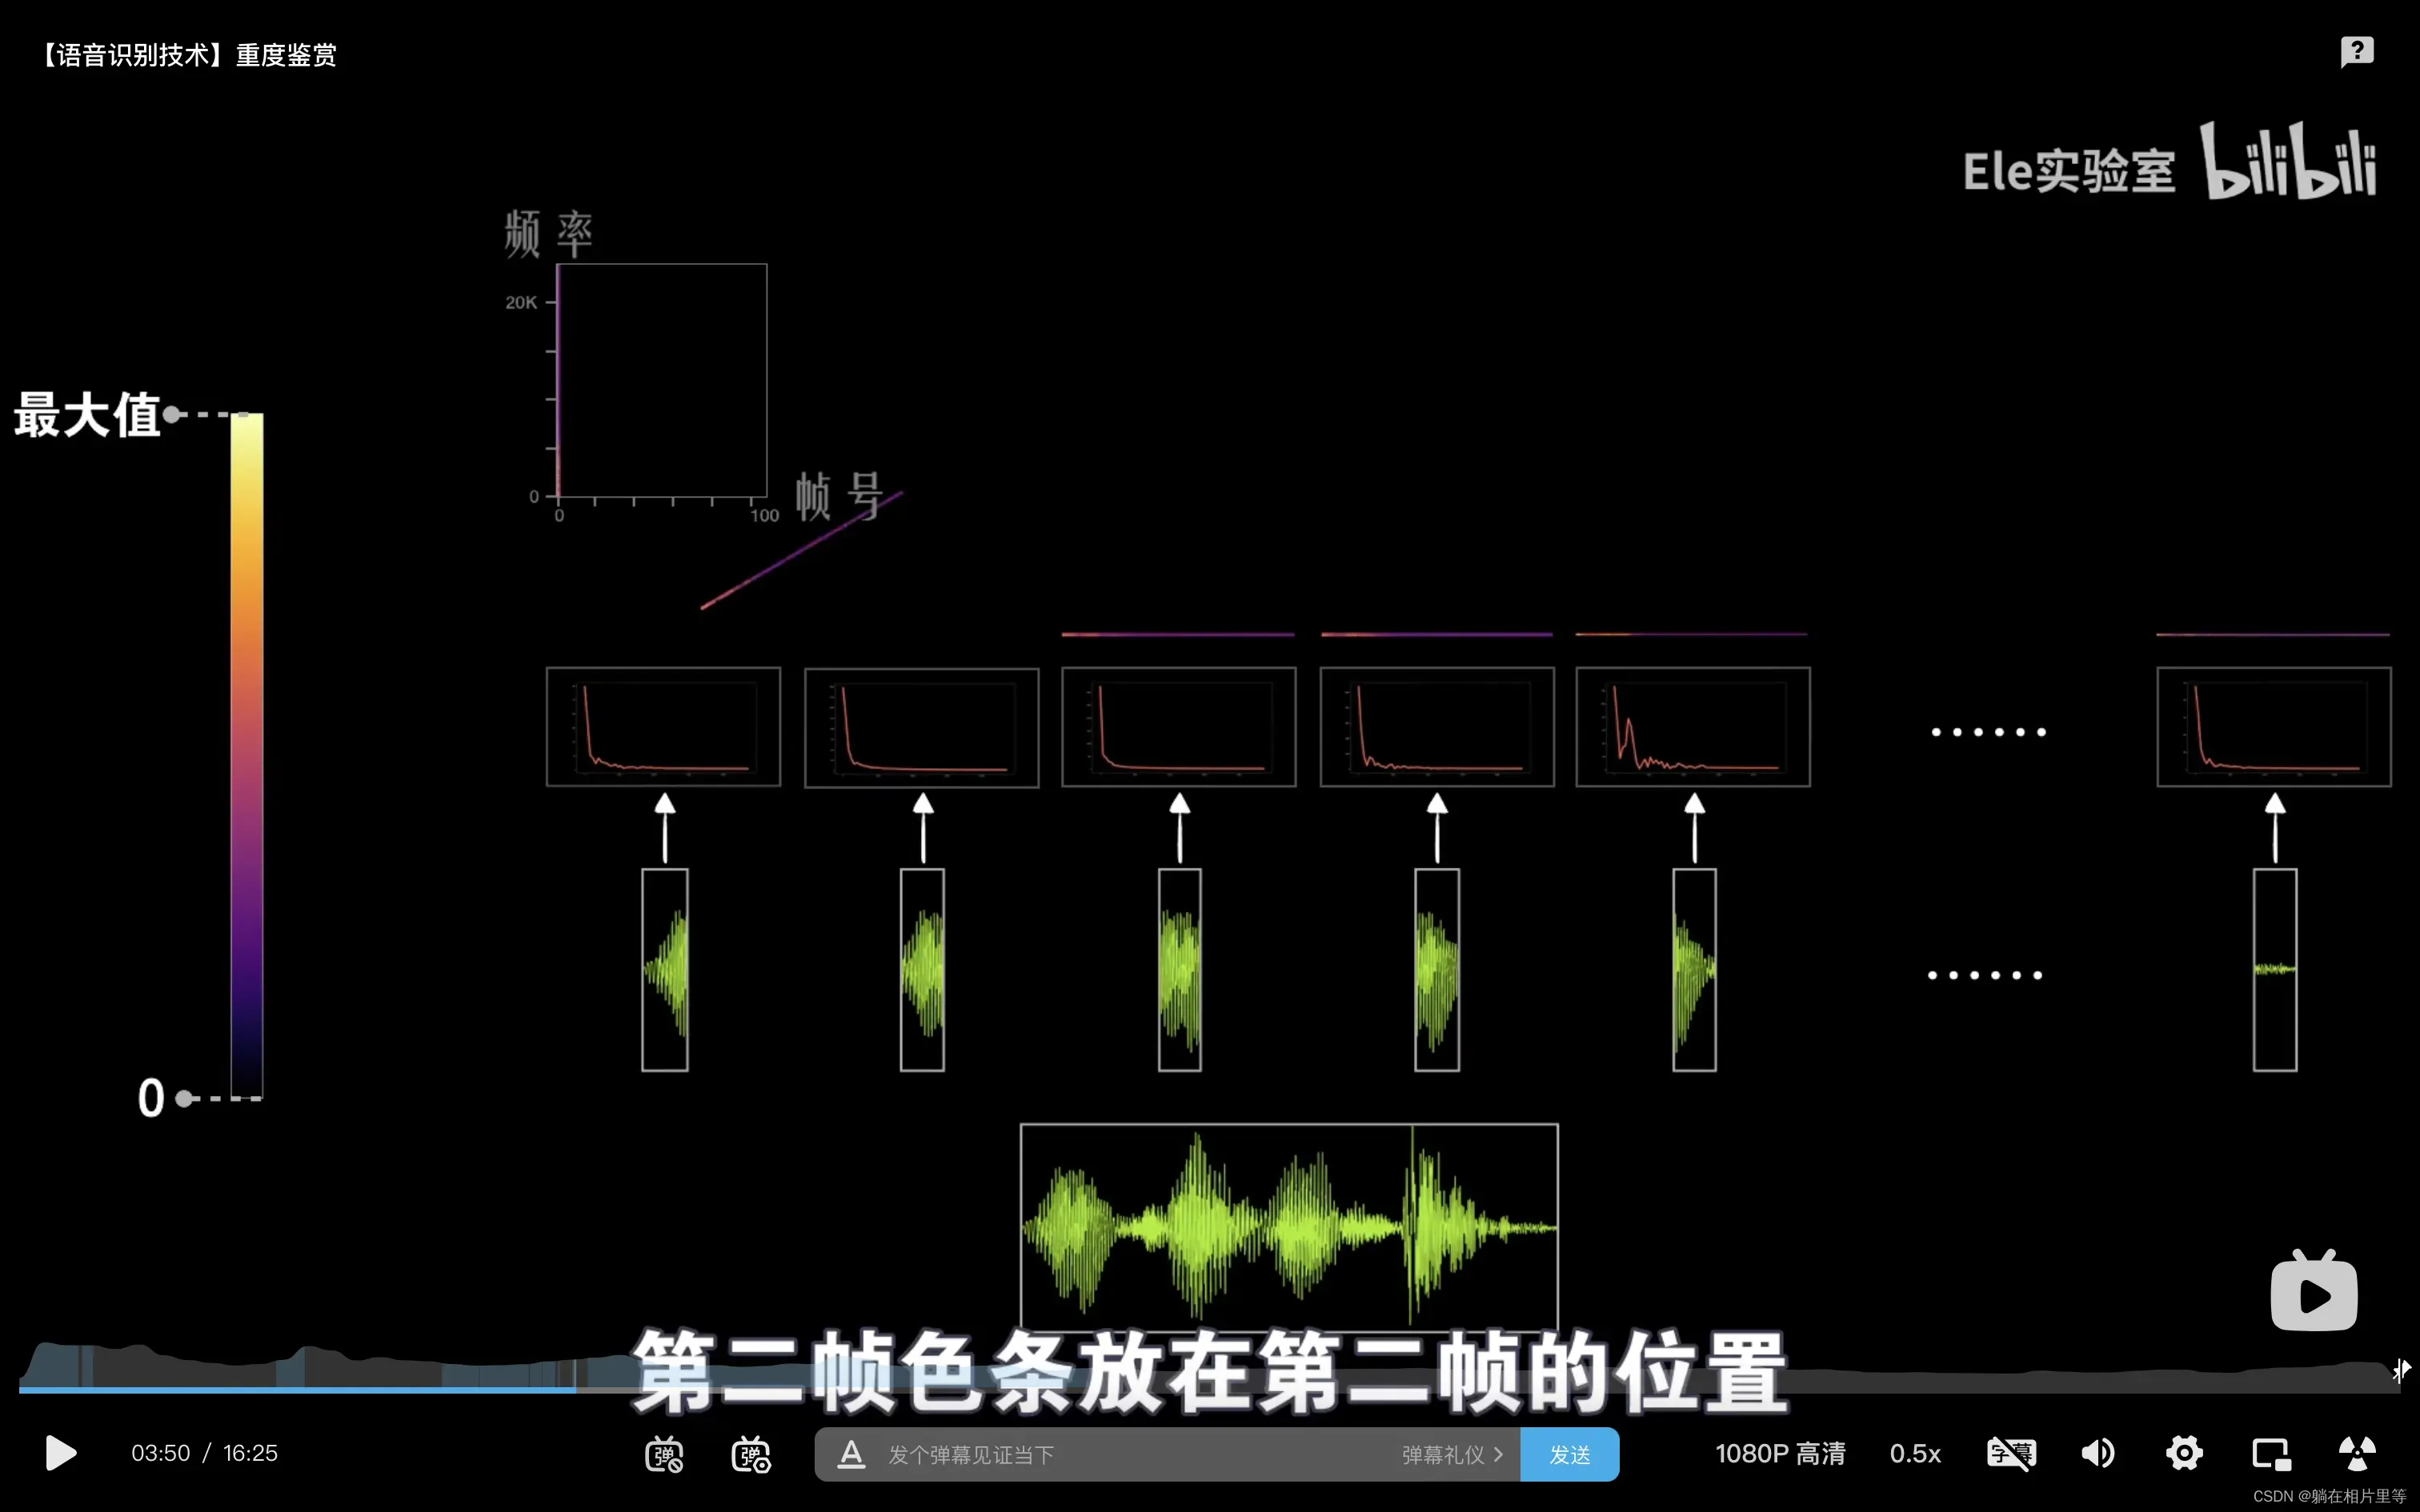 语音识别中MFCC频谱和如何得到频谱图的图示讲解